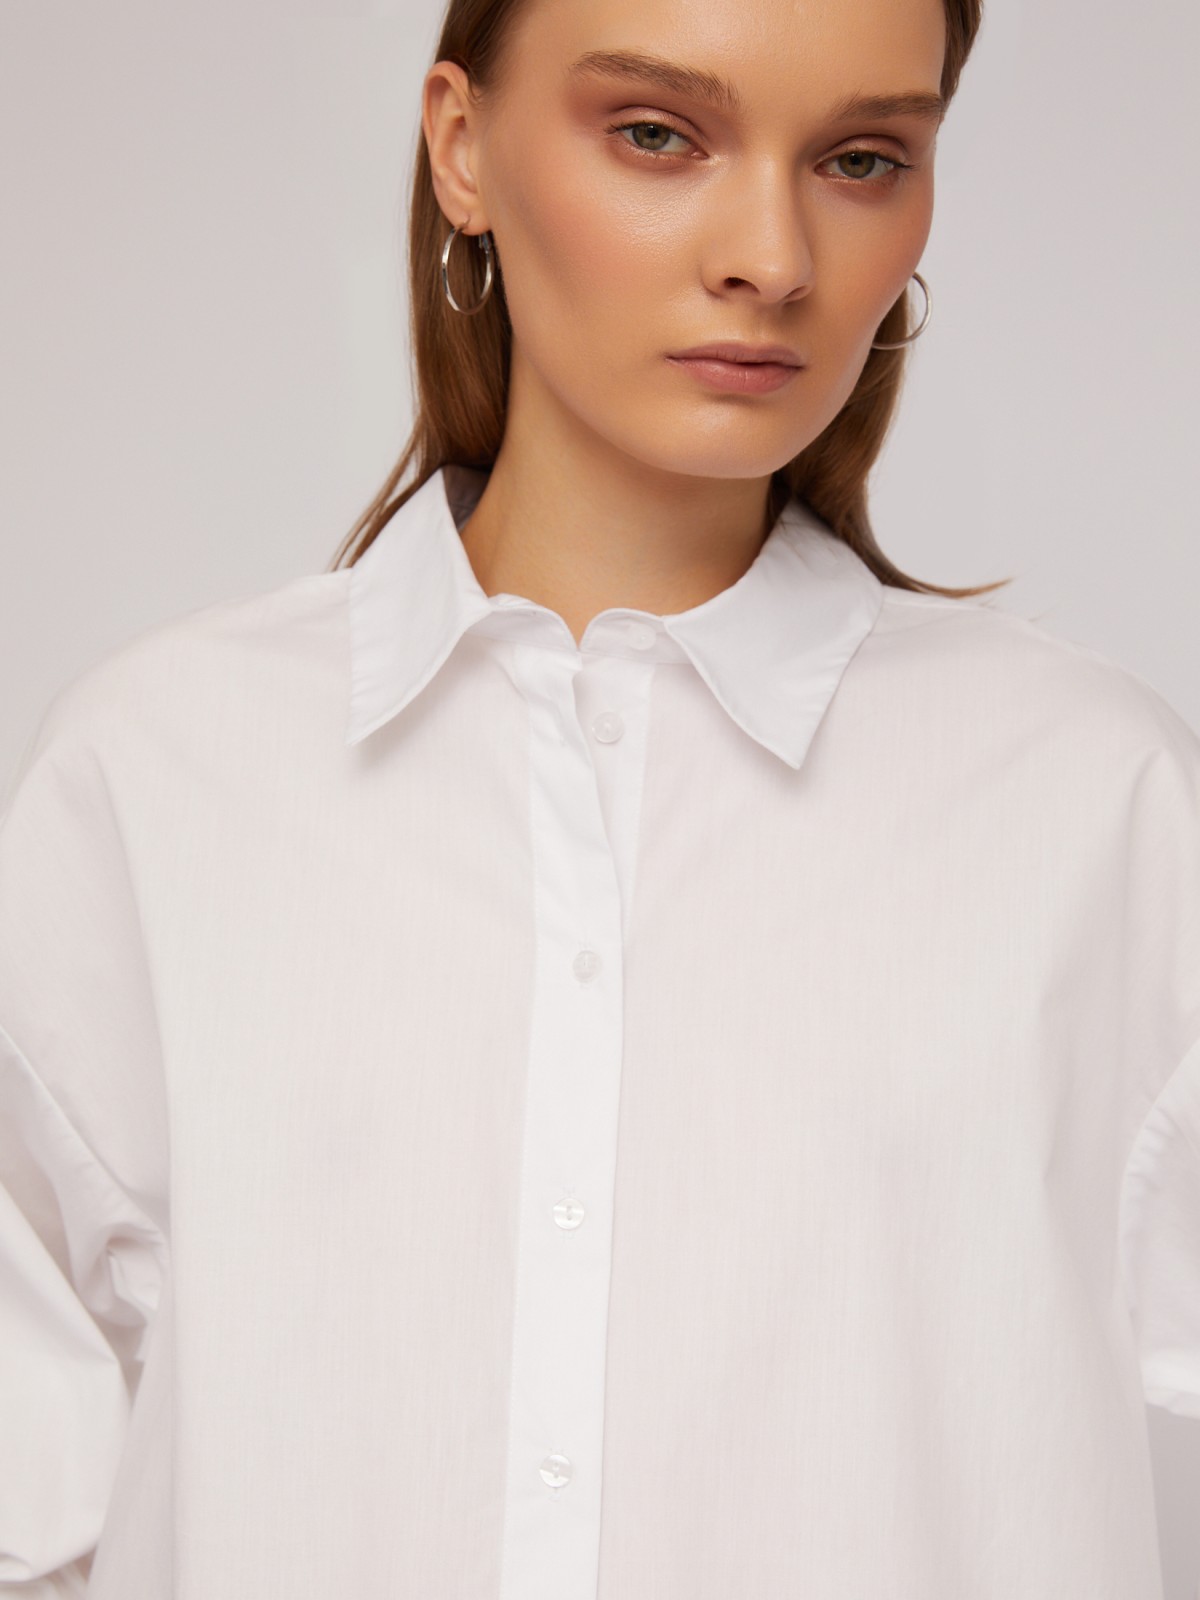 Рубашка из хлопка оверсайз силуэта с акцентными манжетами zolla 024211159033, цвет белый, размер XS - фото 5